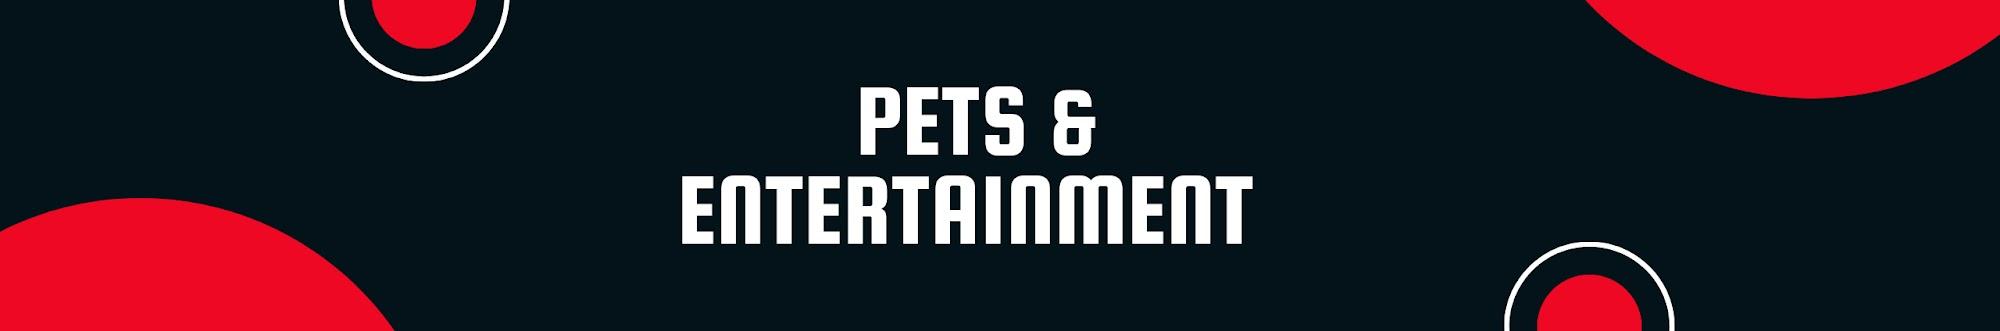 FG Pets & Entertainment